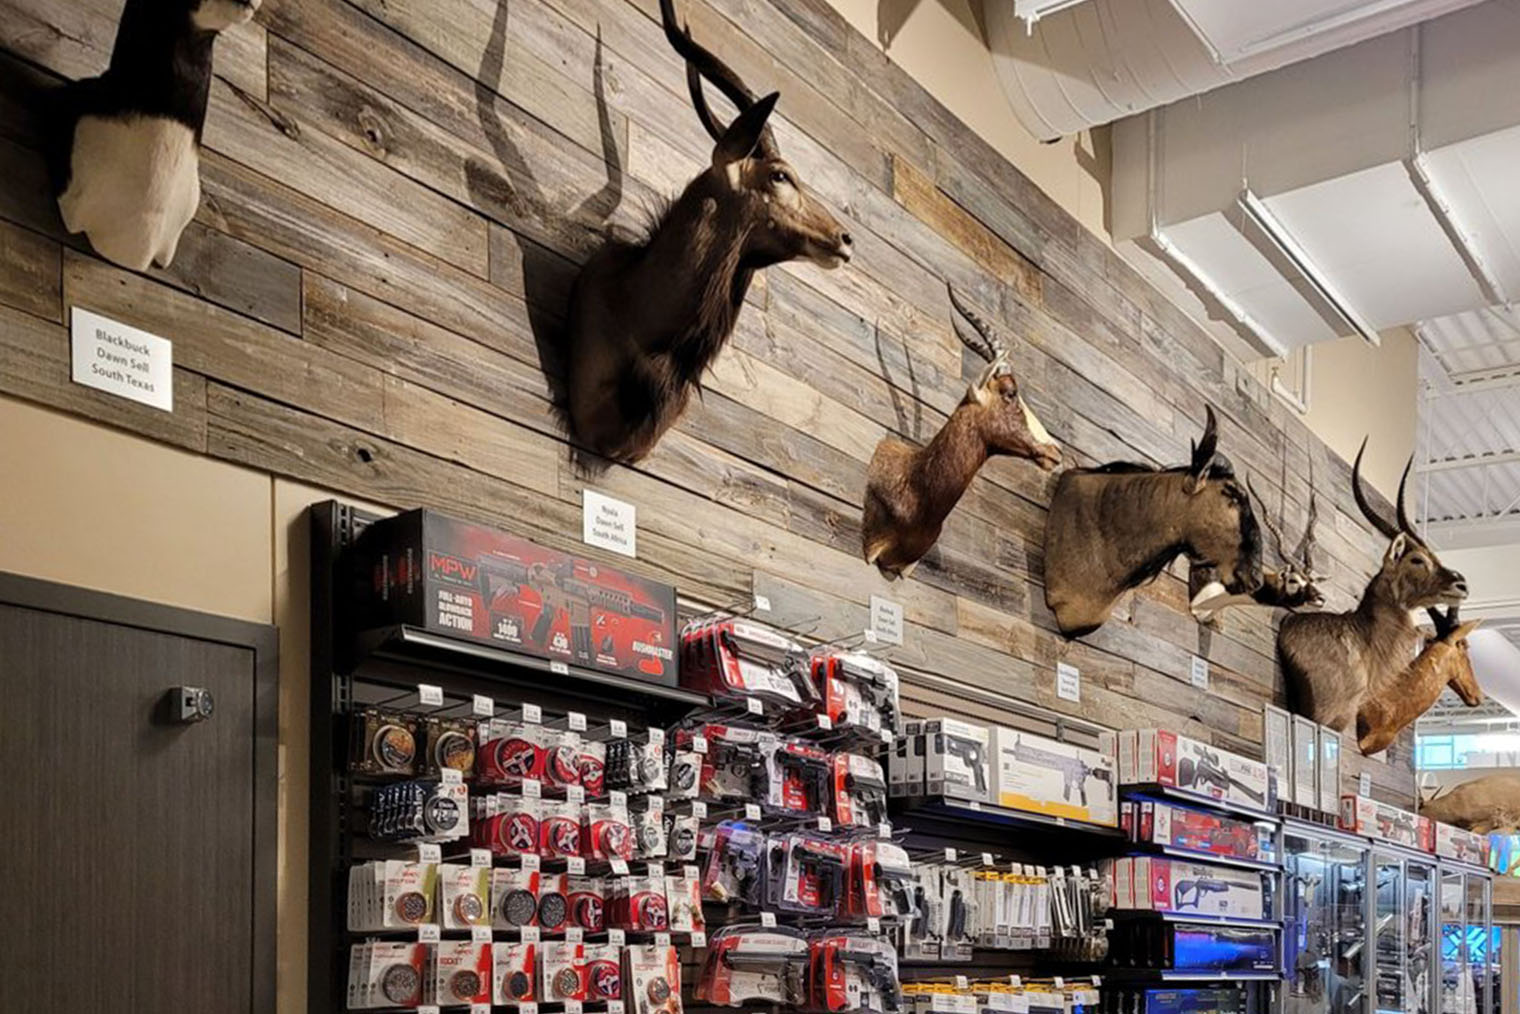 Чучела животных — популярный декор в магазинах активного отдыха